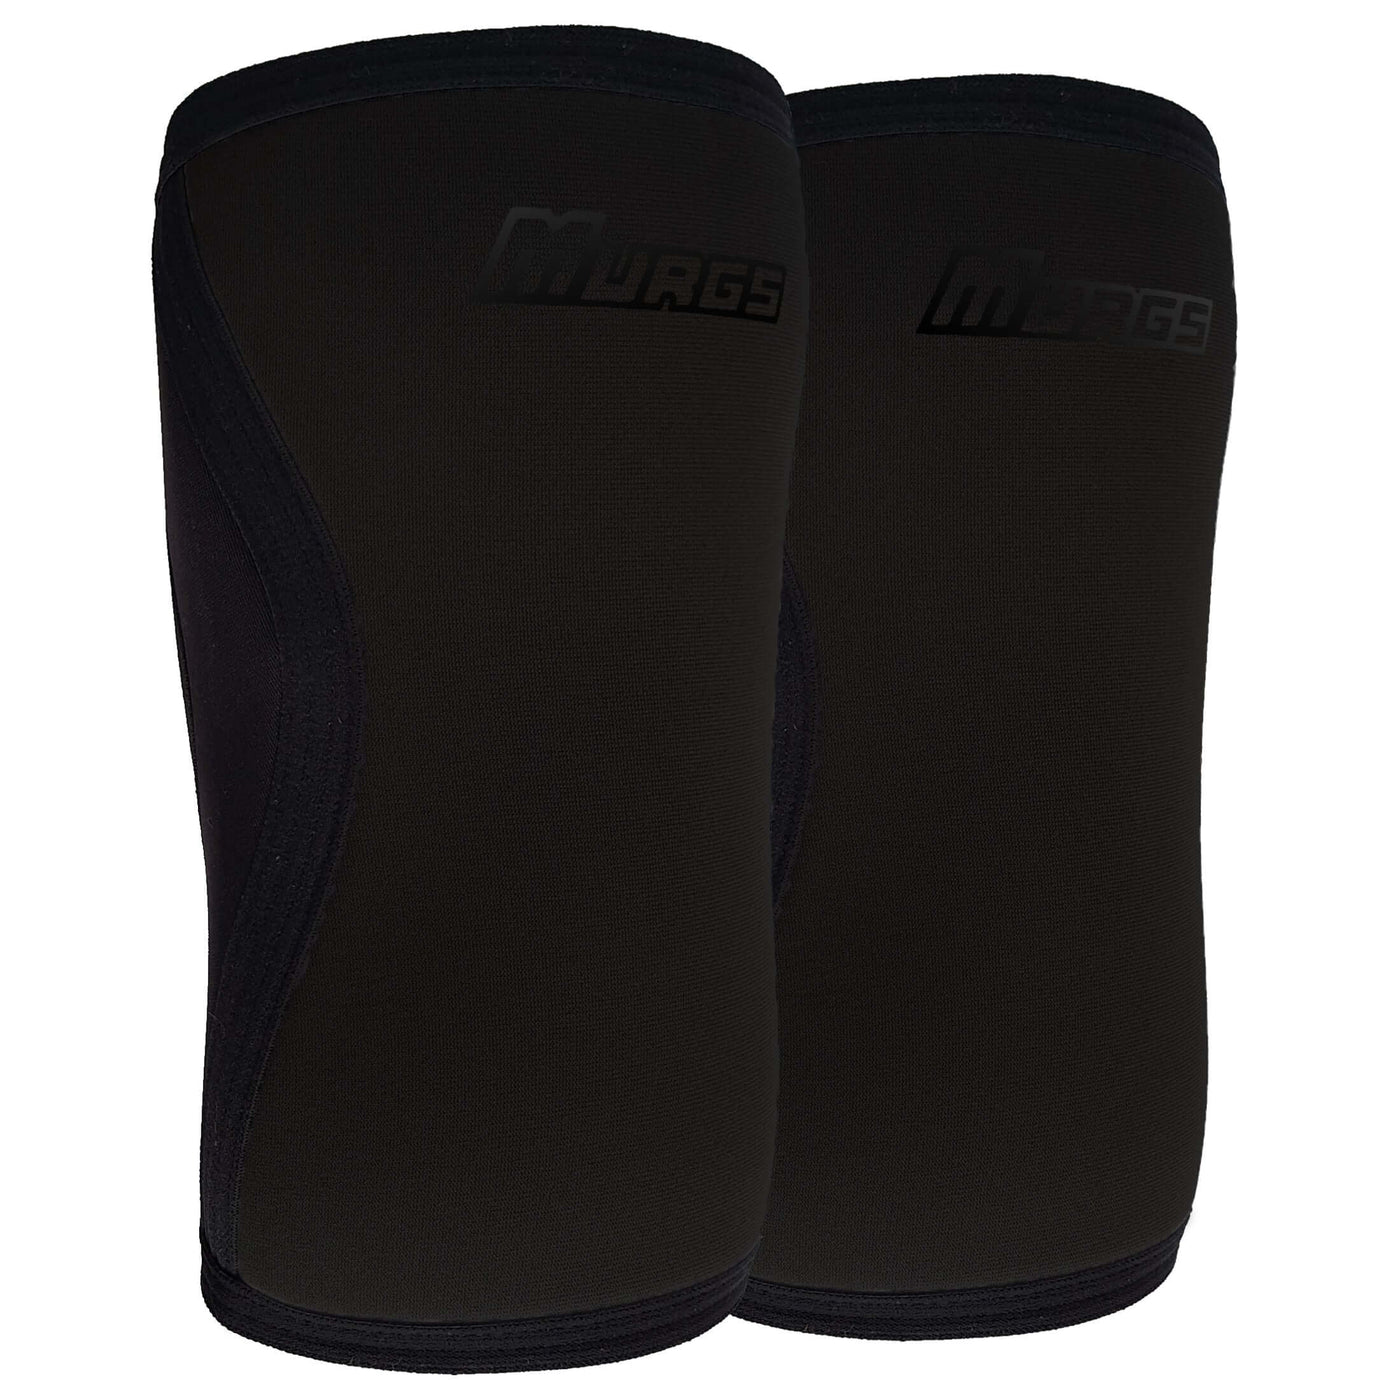 Murgs 7mm knee sleeves pair Black on Black